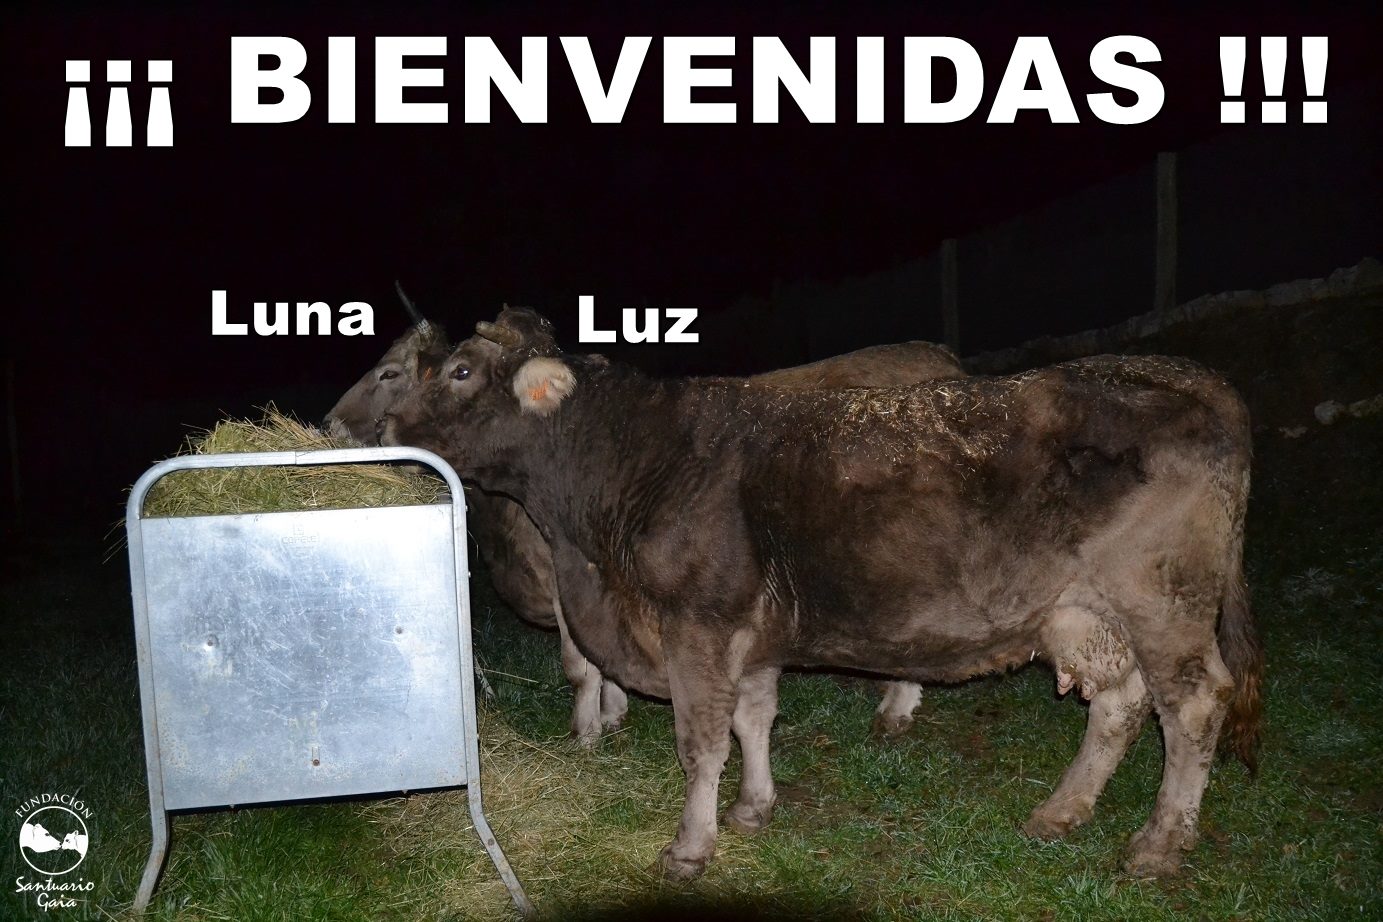 Luz Luna